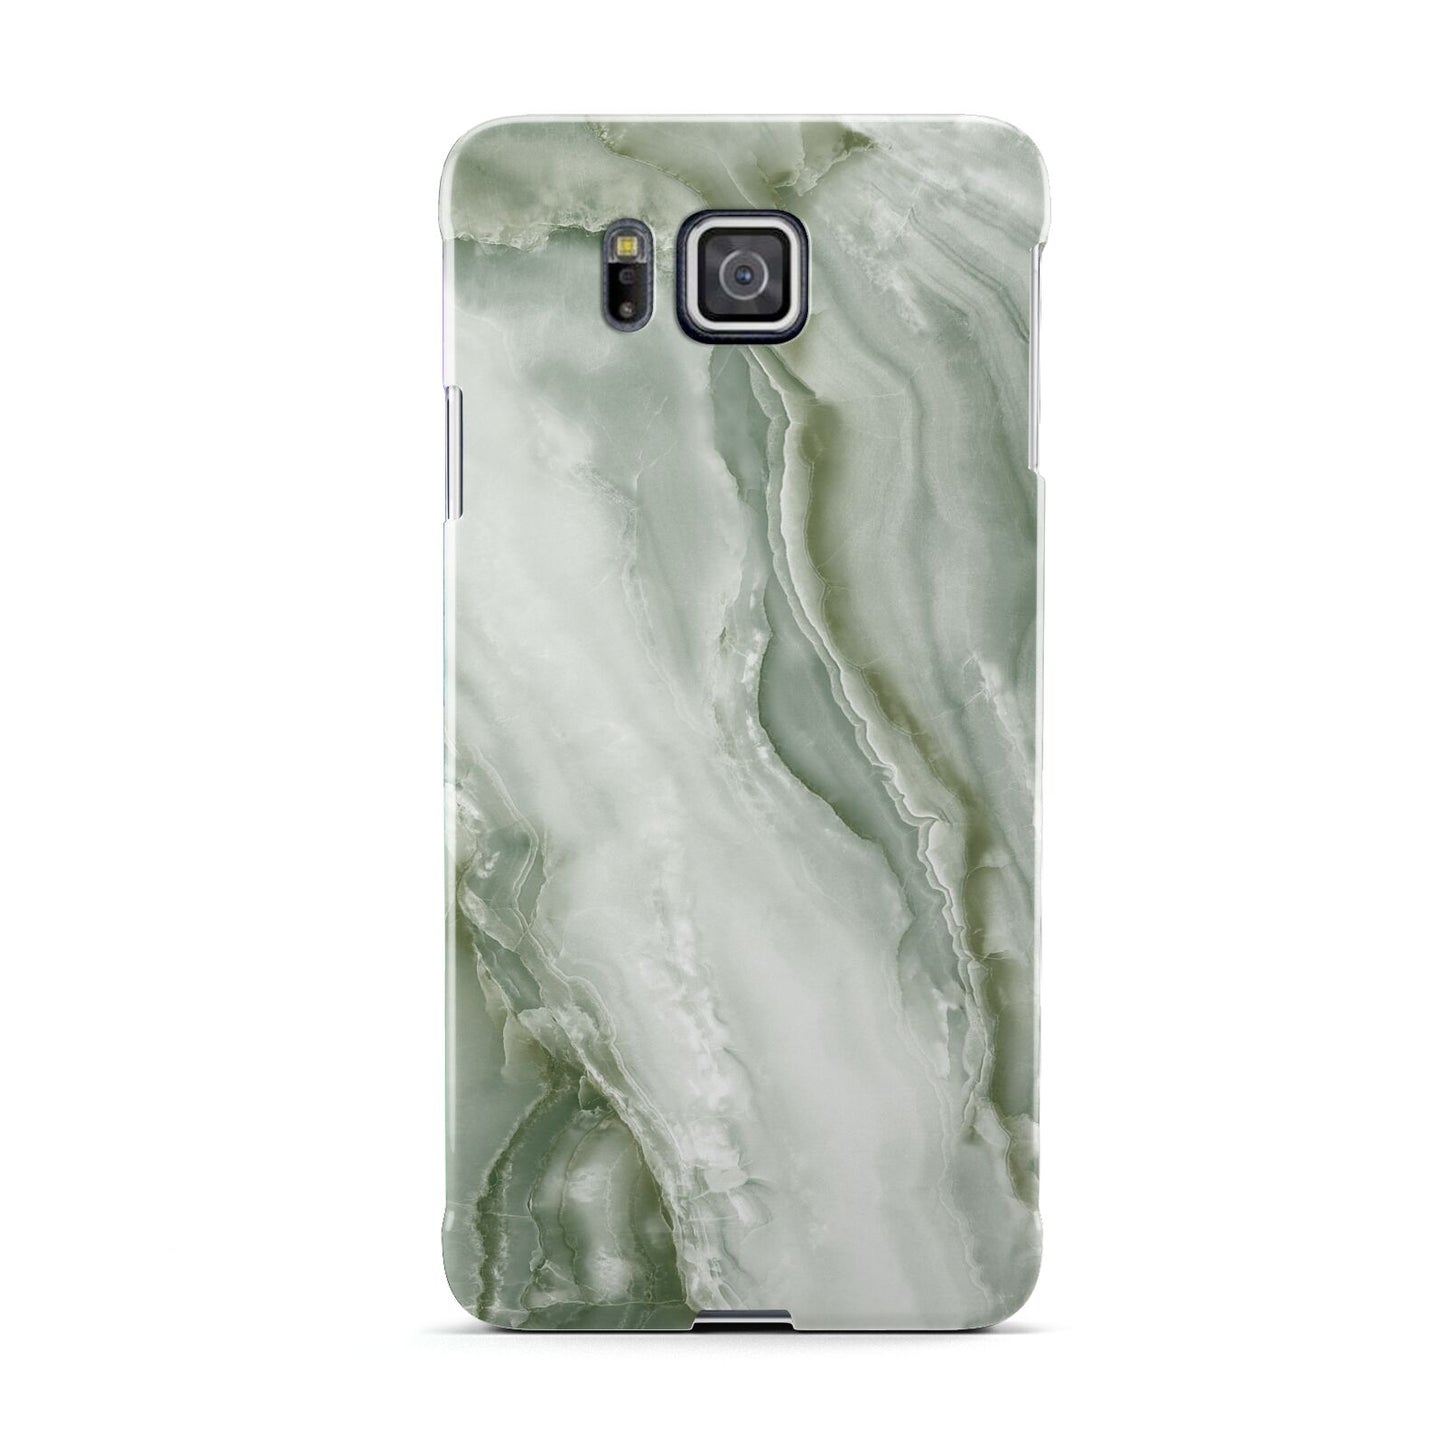 Pistachio Green Marble Samsung Galaxy Alpha Case